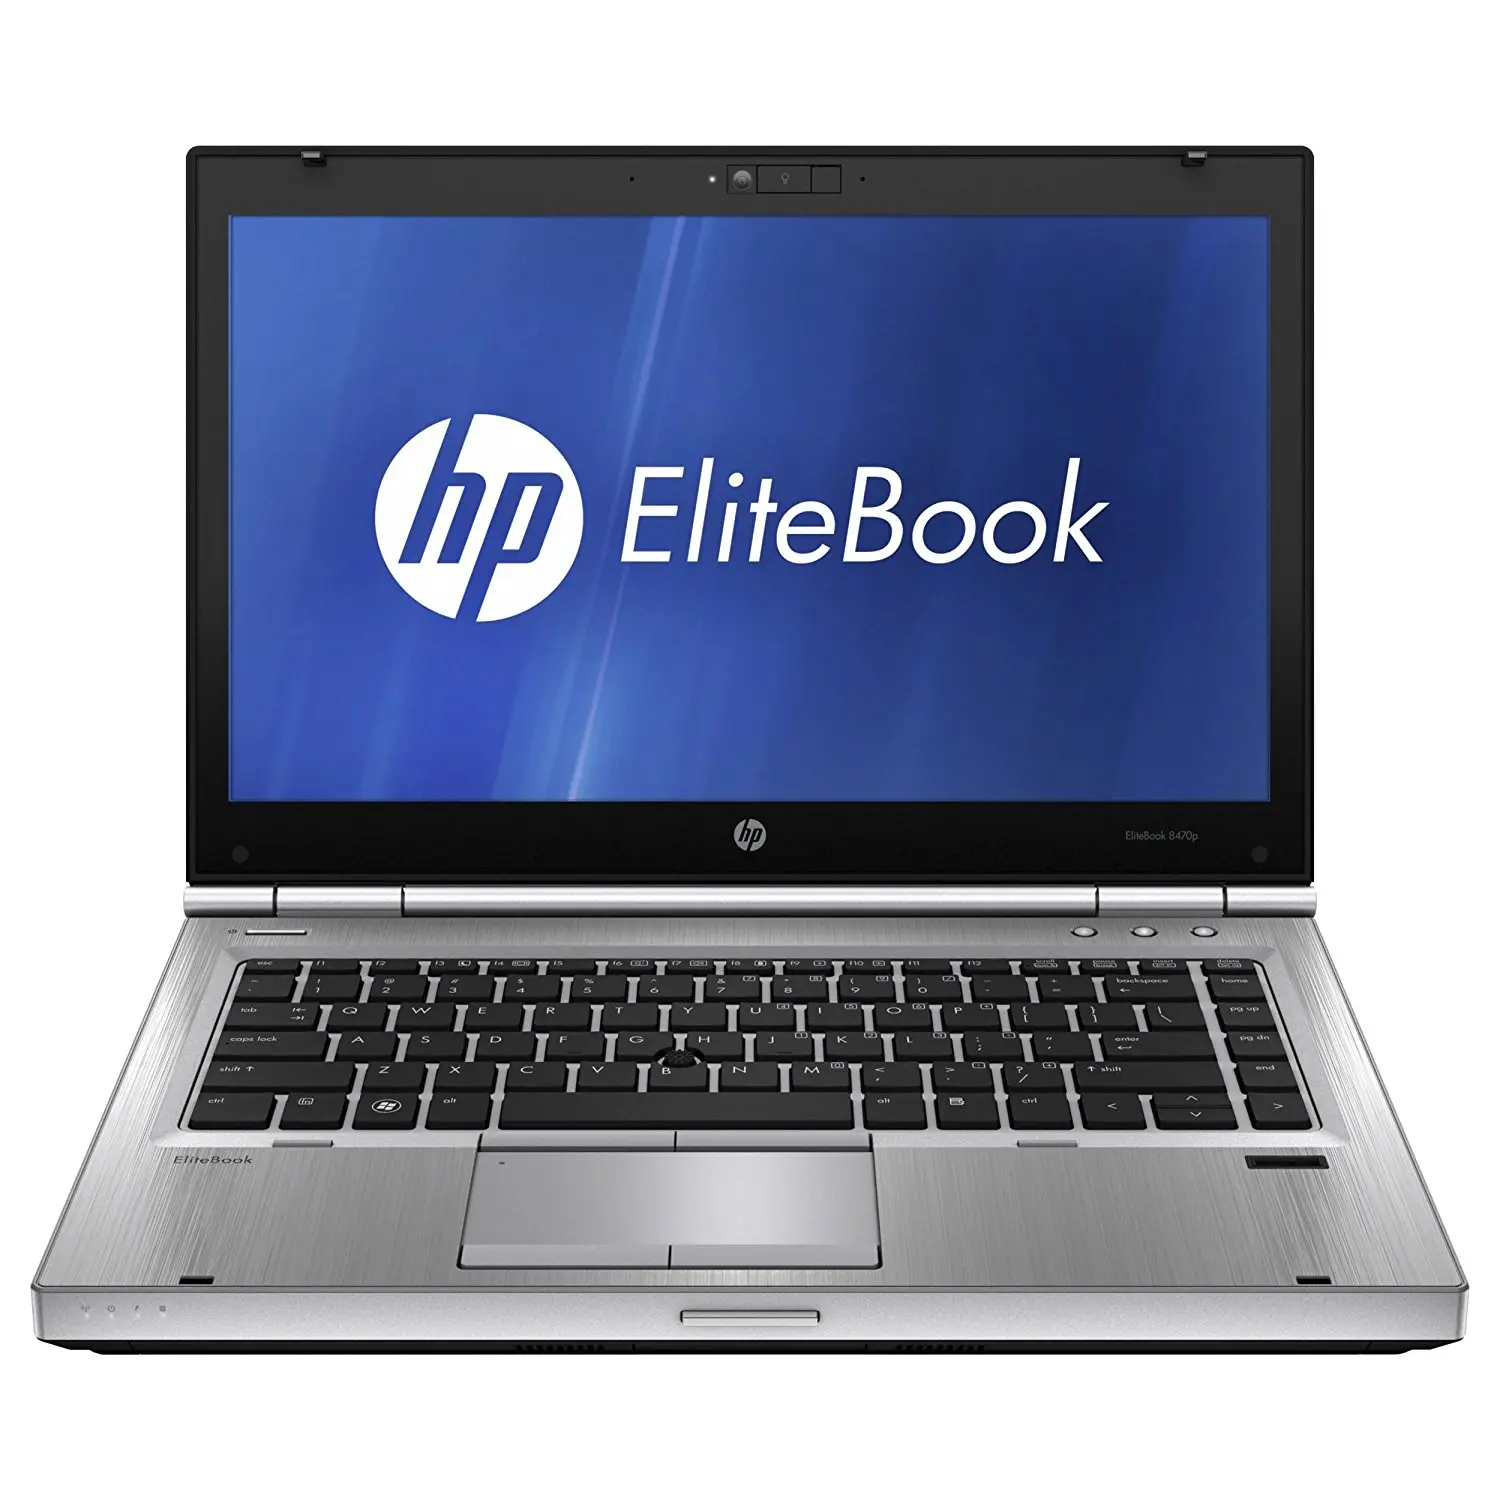 Hp elitebook 179b kbc version 438: reliable & efficient business laptop